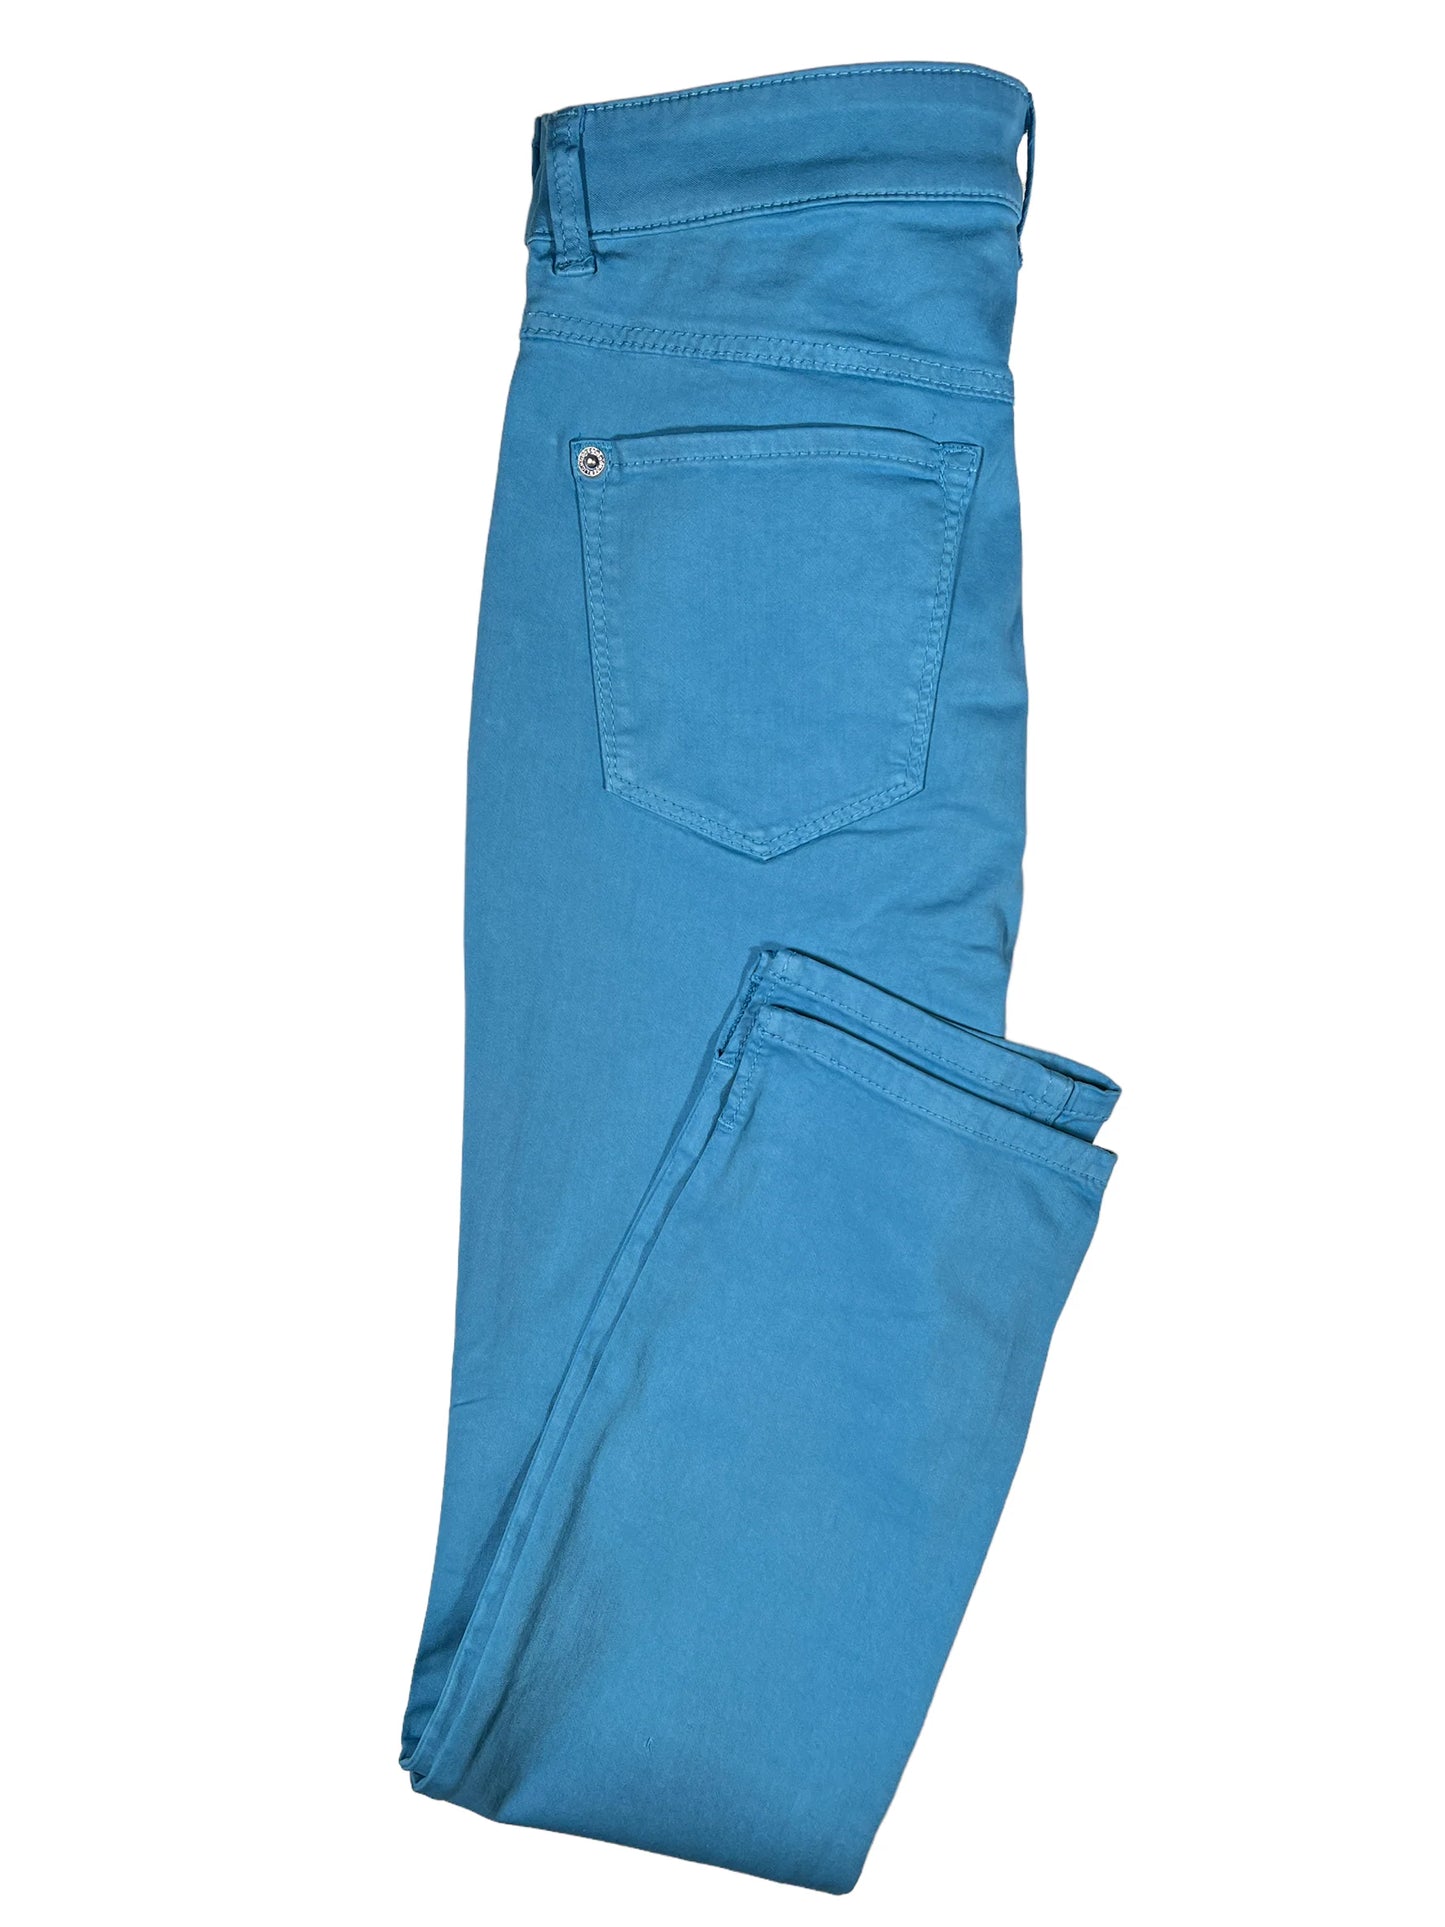 Mac Jeans Dream Summer Cotton Pant